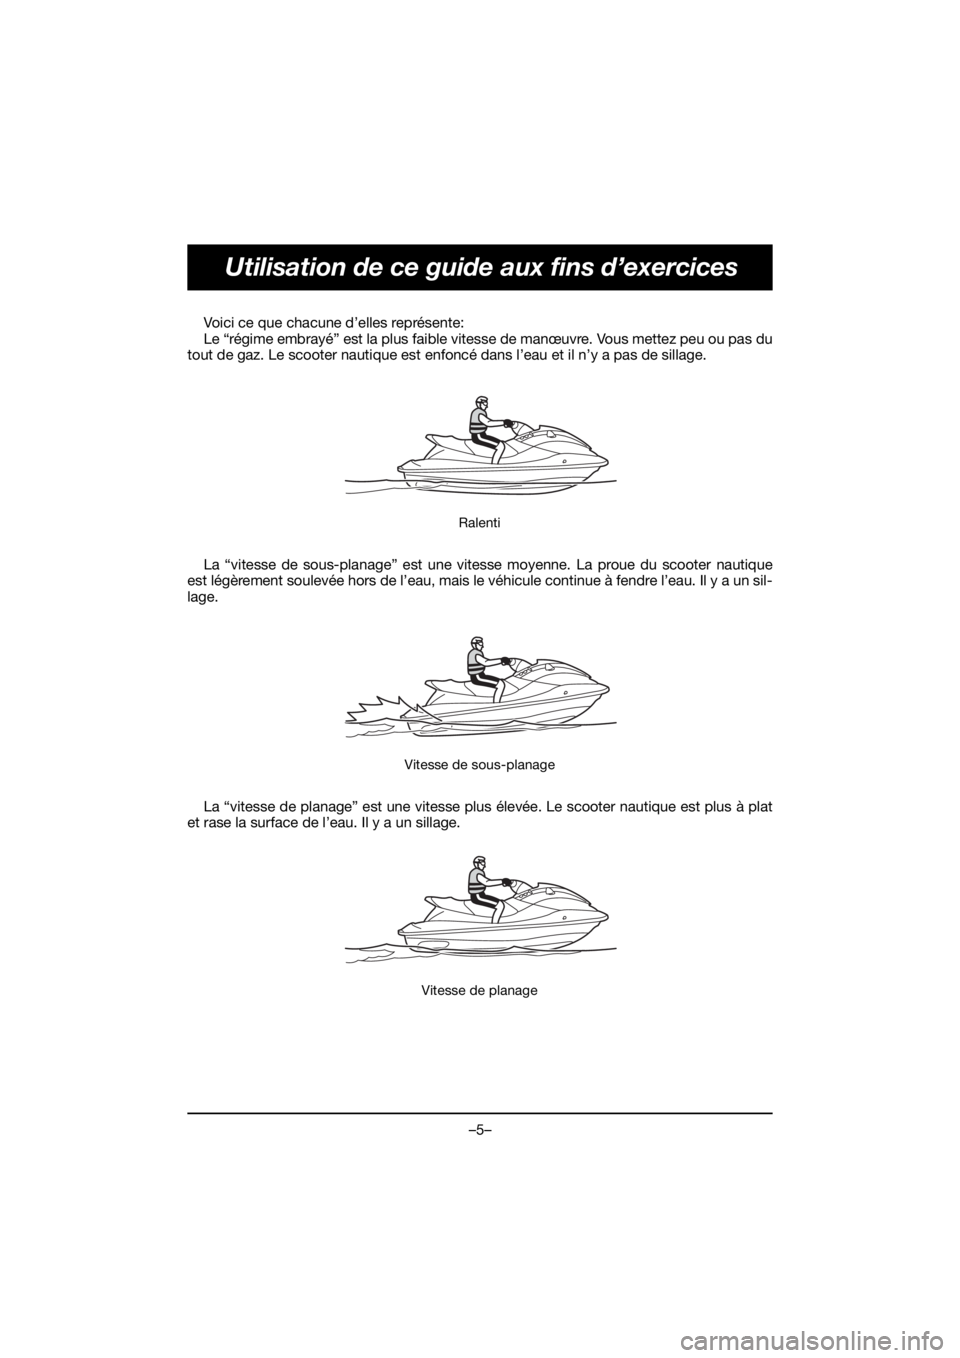 YAMAHA EXR 2020 Owners Guide –5–
Utilisation de ce guide aux fins d’exercices
Voici ce que chacune d’elles représente: 
Le “régime embrayé” est la plus faible vitesse de manœuvre. Vous mettez peu ou pas du
tout de